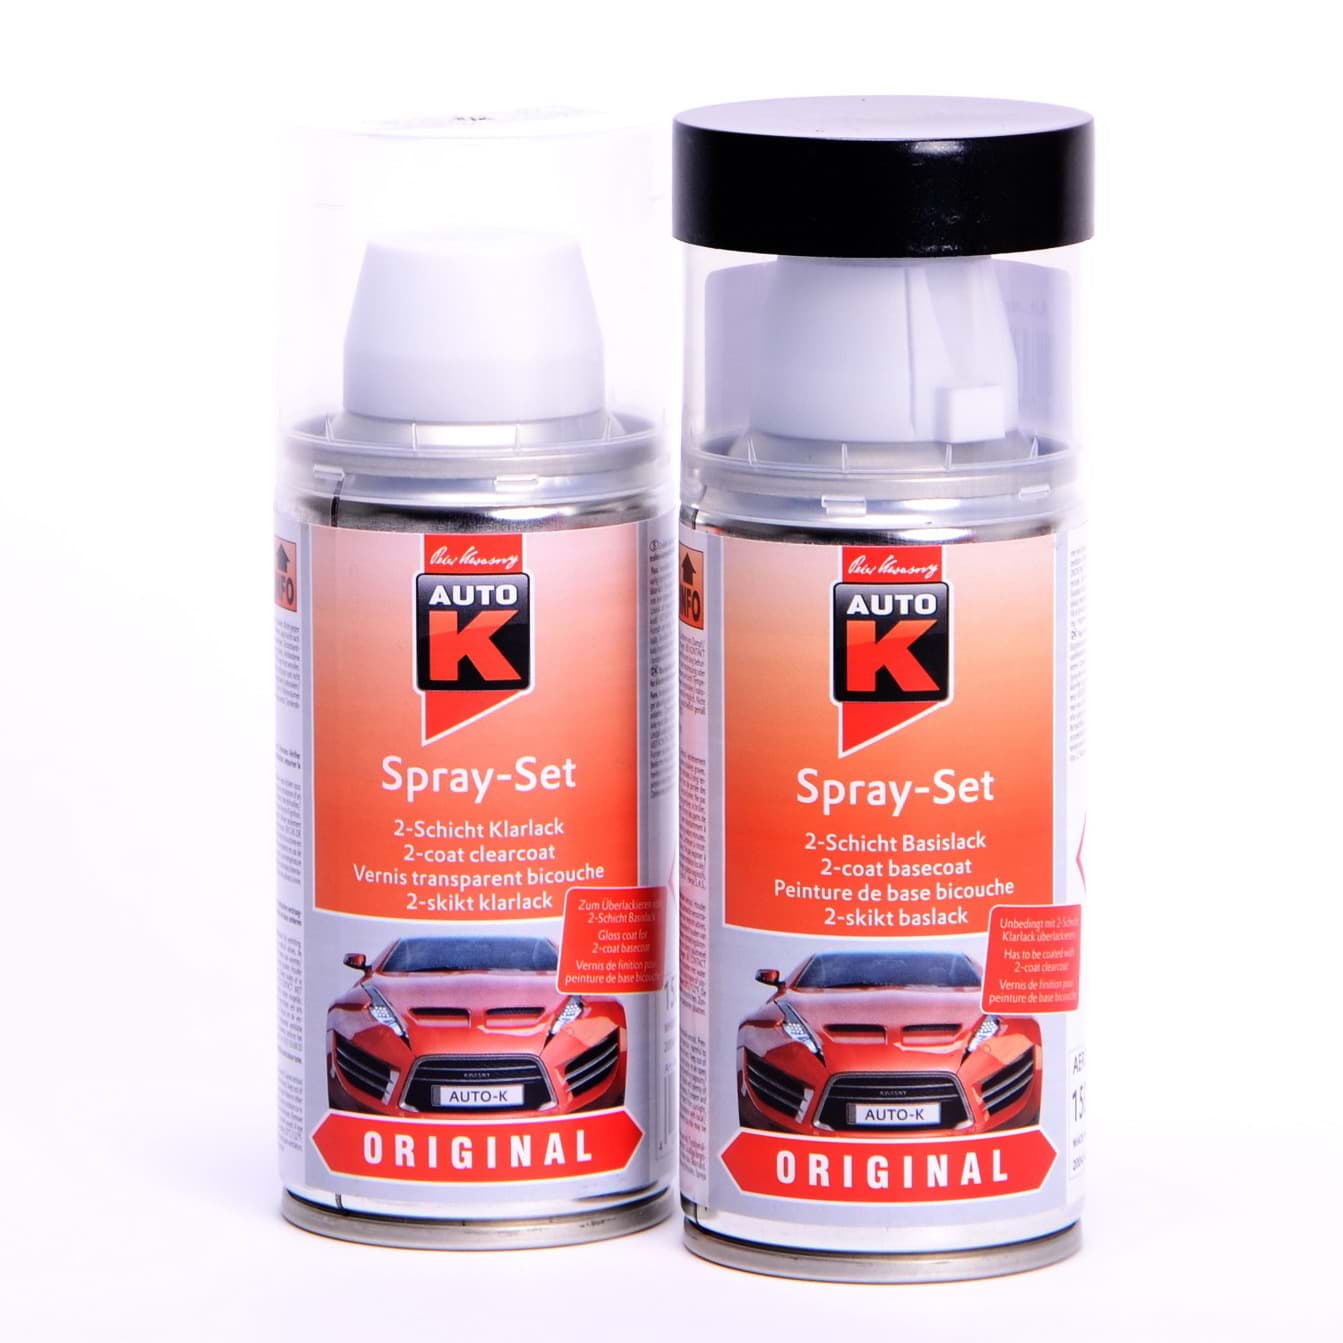 Afbeelding van Auto-K Spray-Set Autolack für BMW 252 Calypsorot met 27246